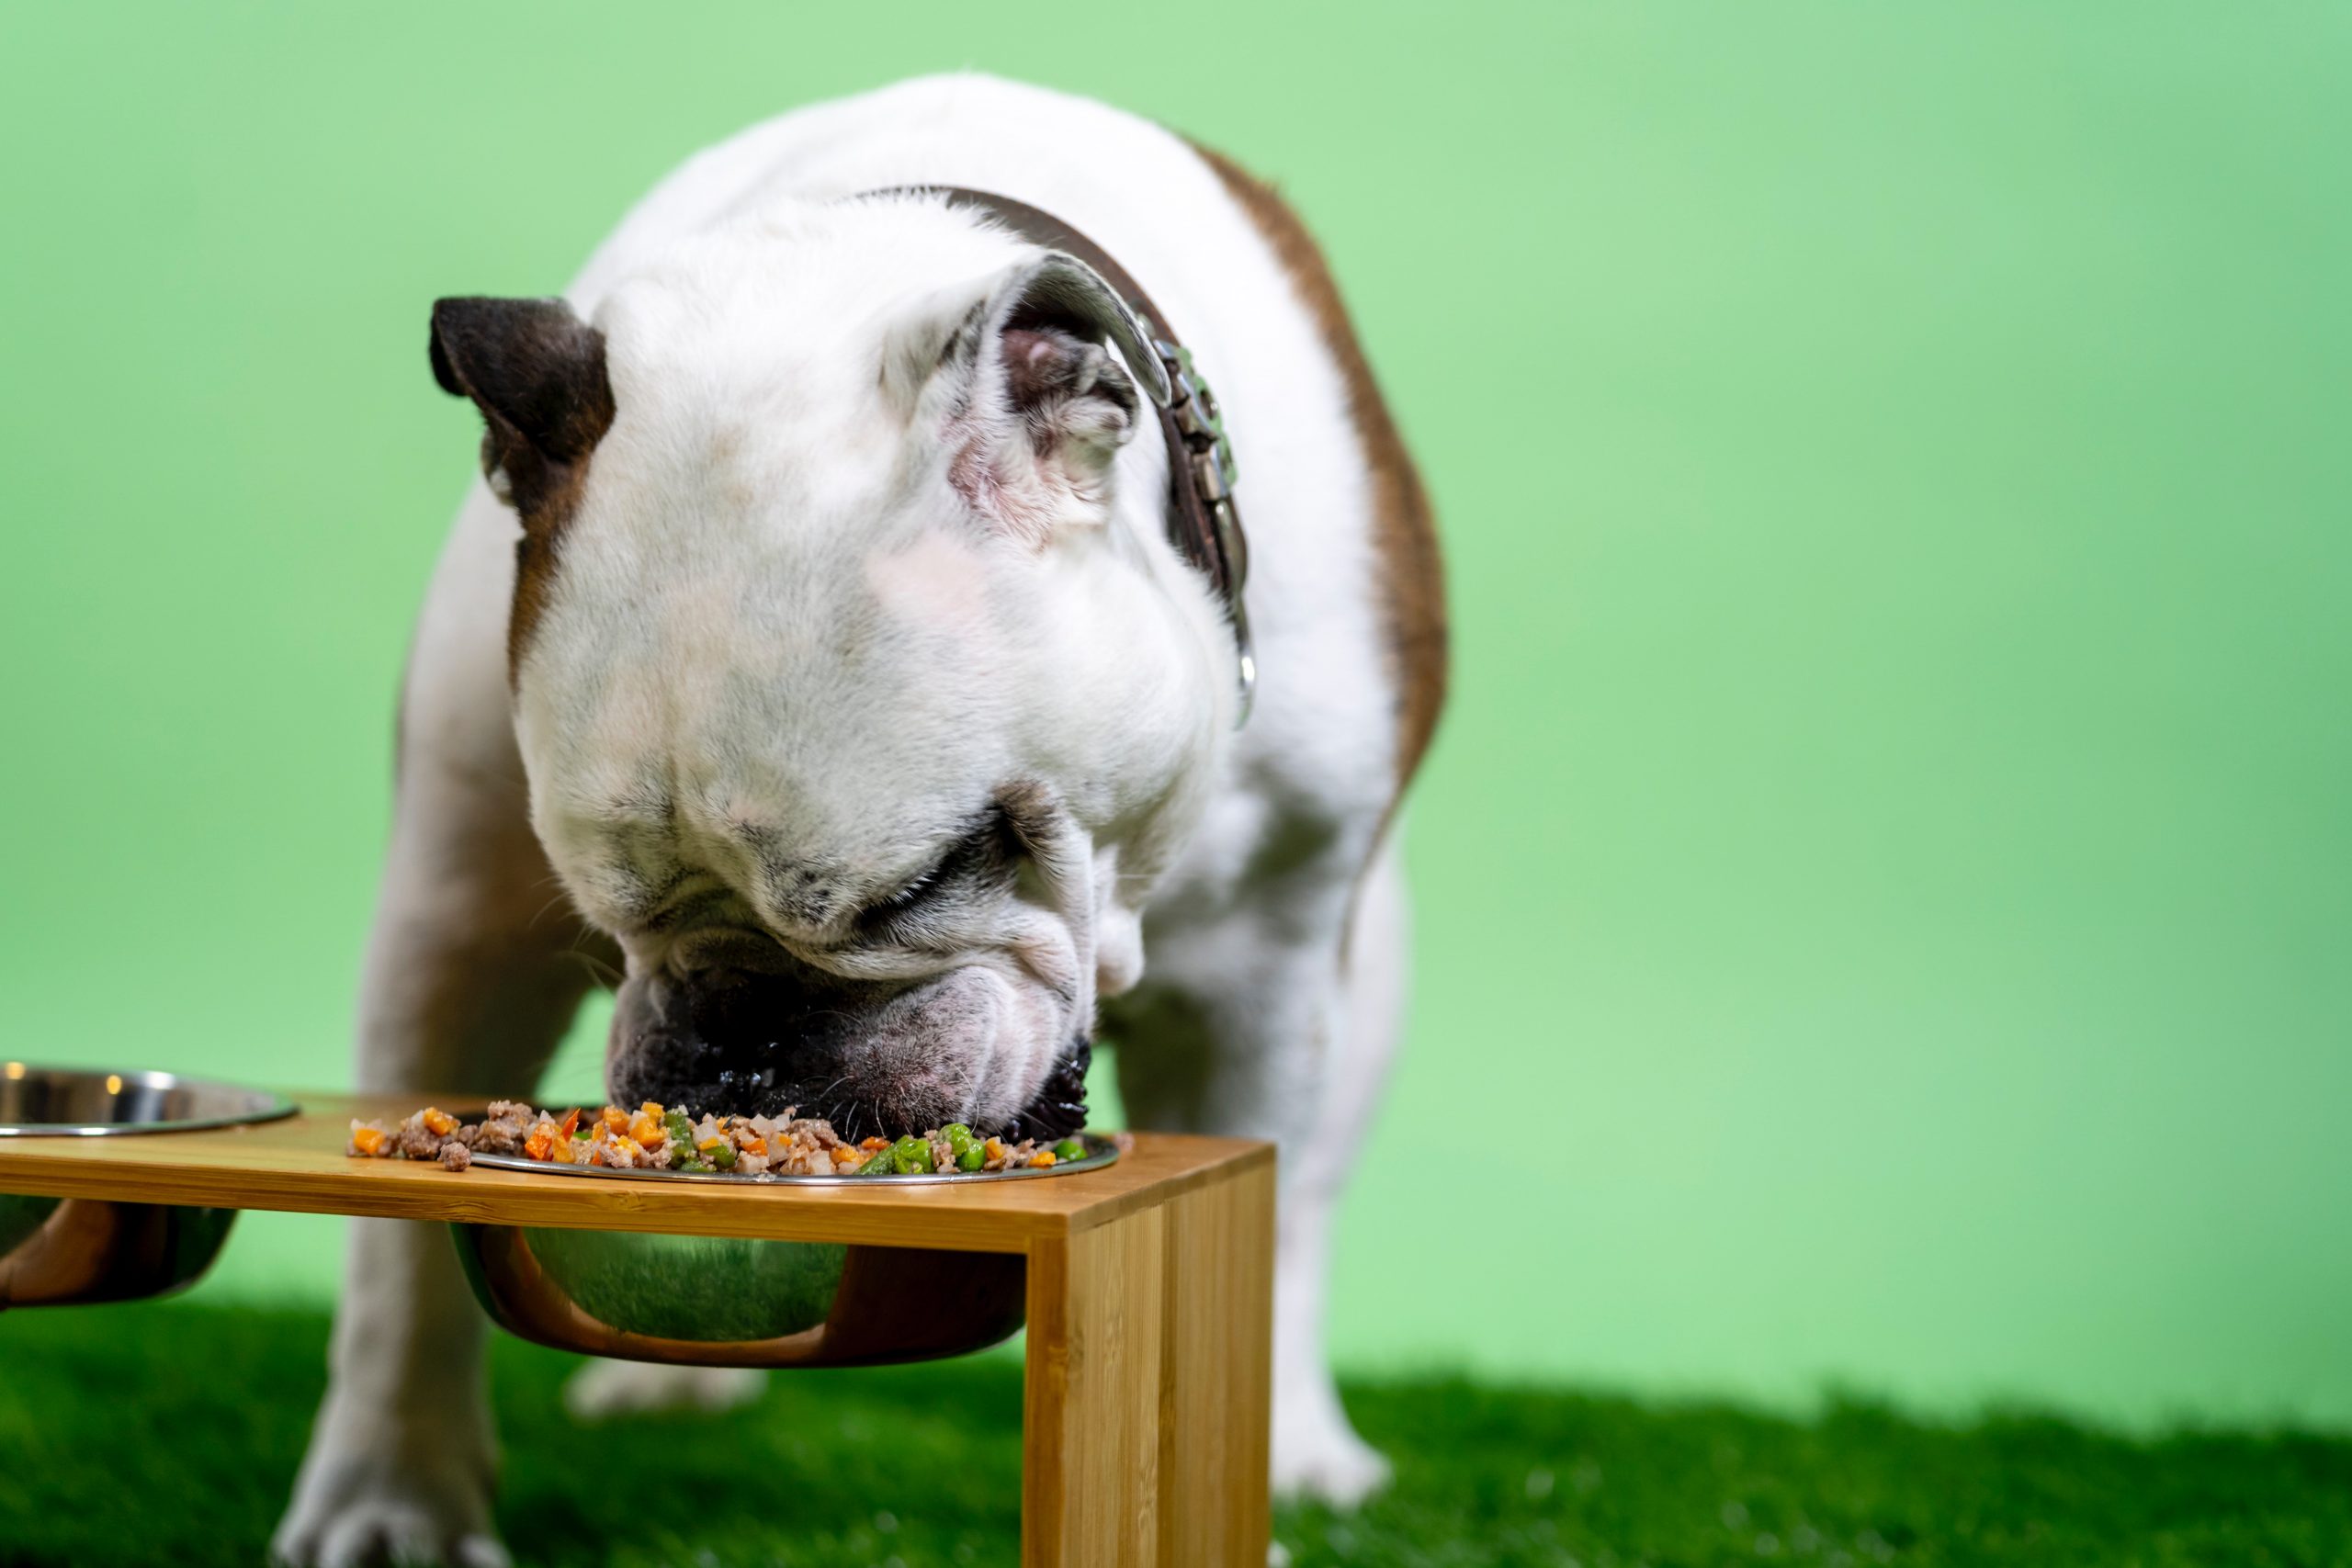 English bulldog eating dog food